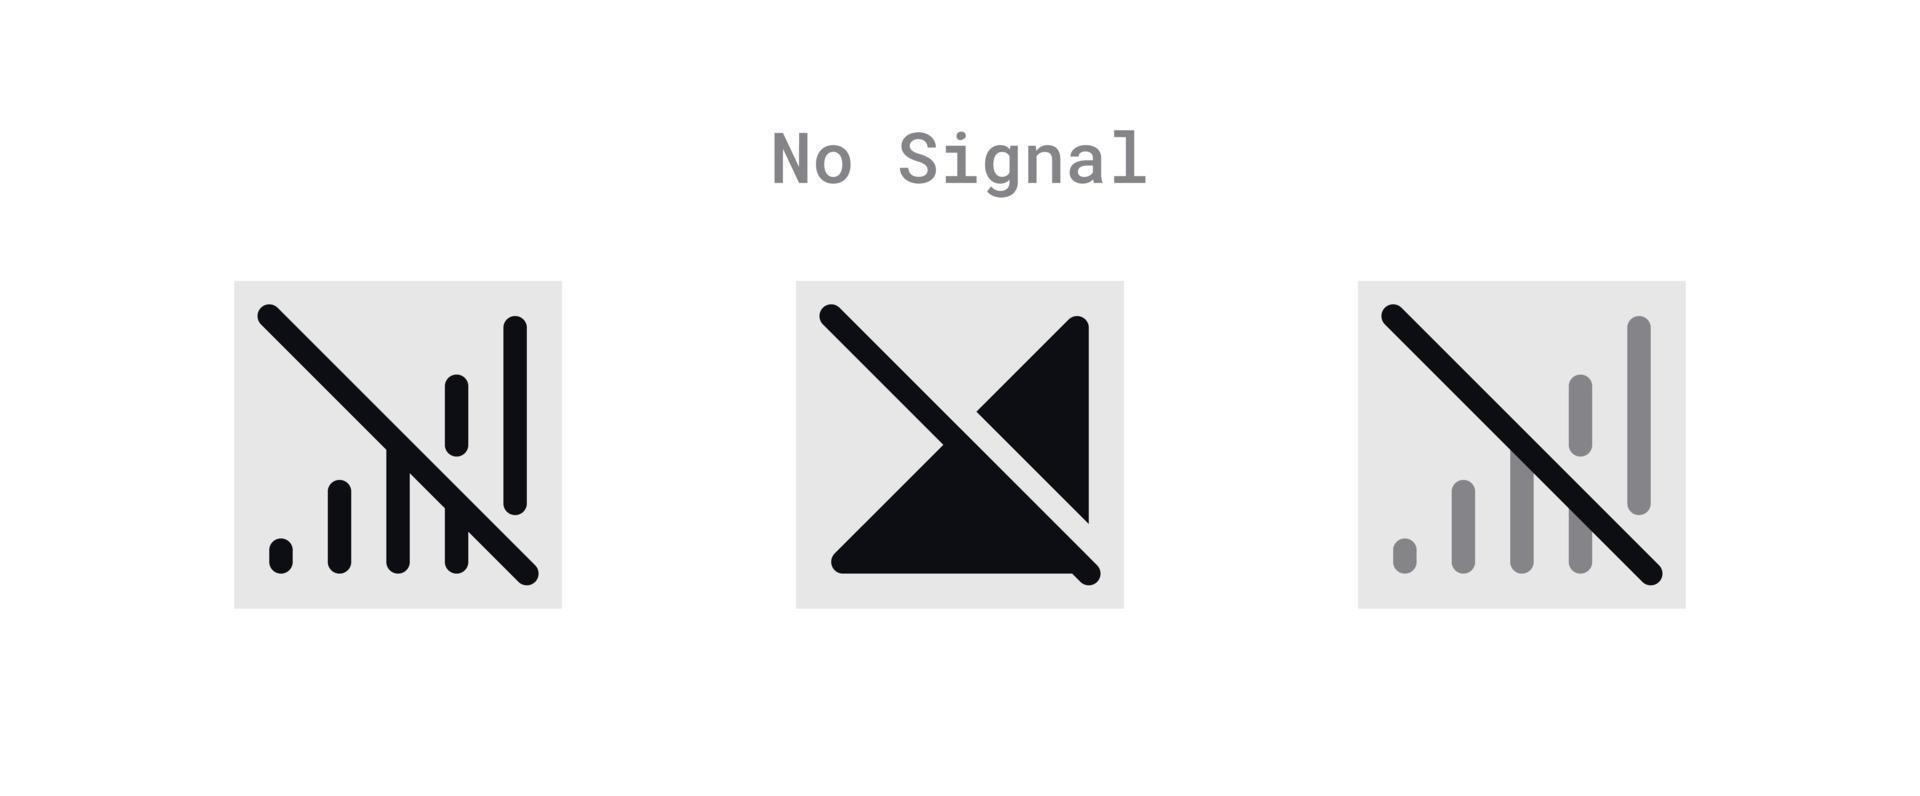 No Signal Icons Sheet vector